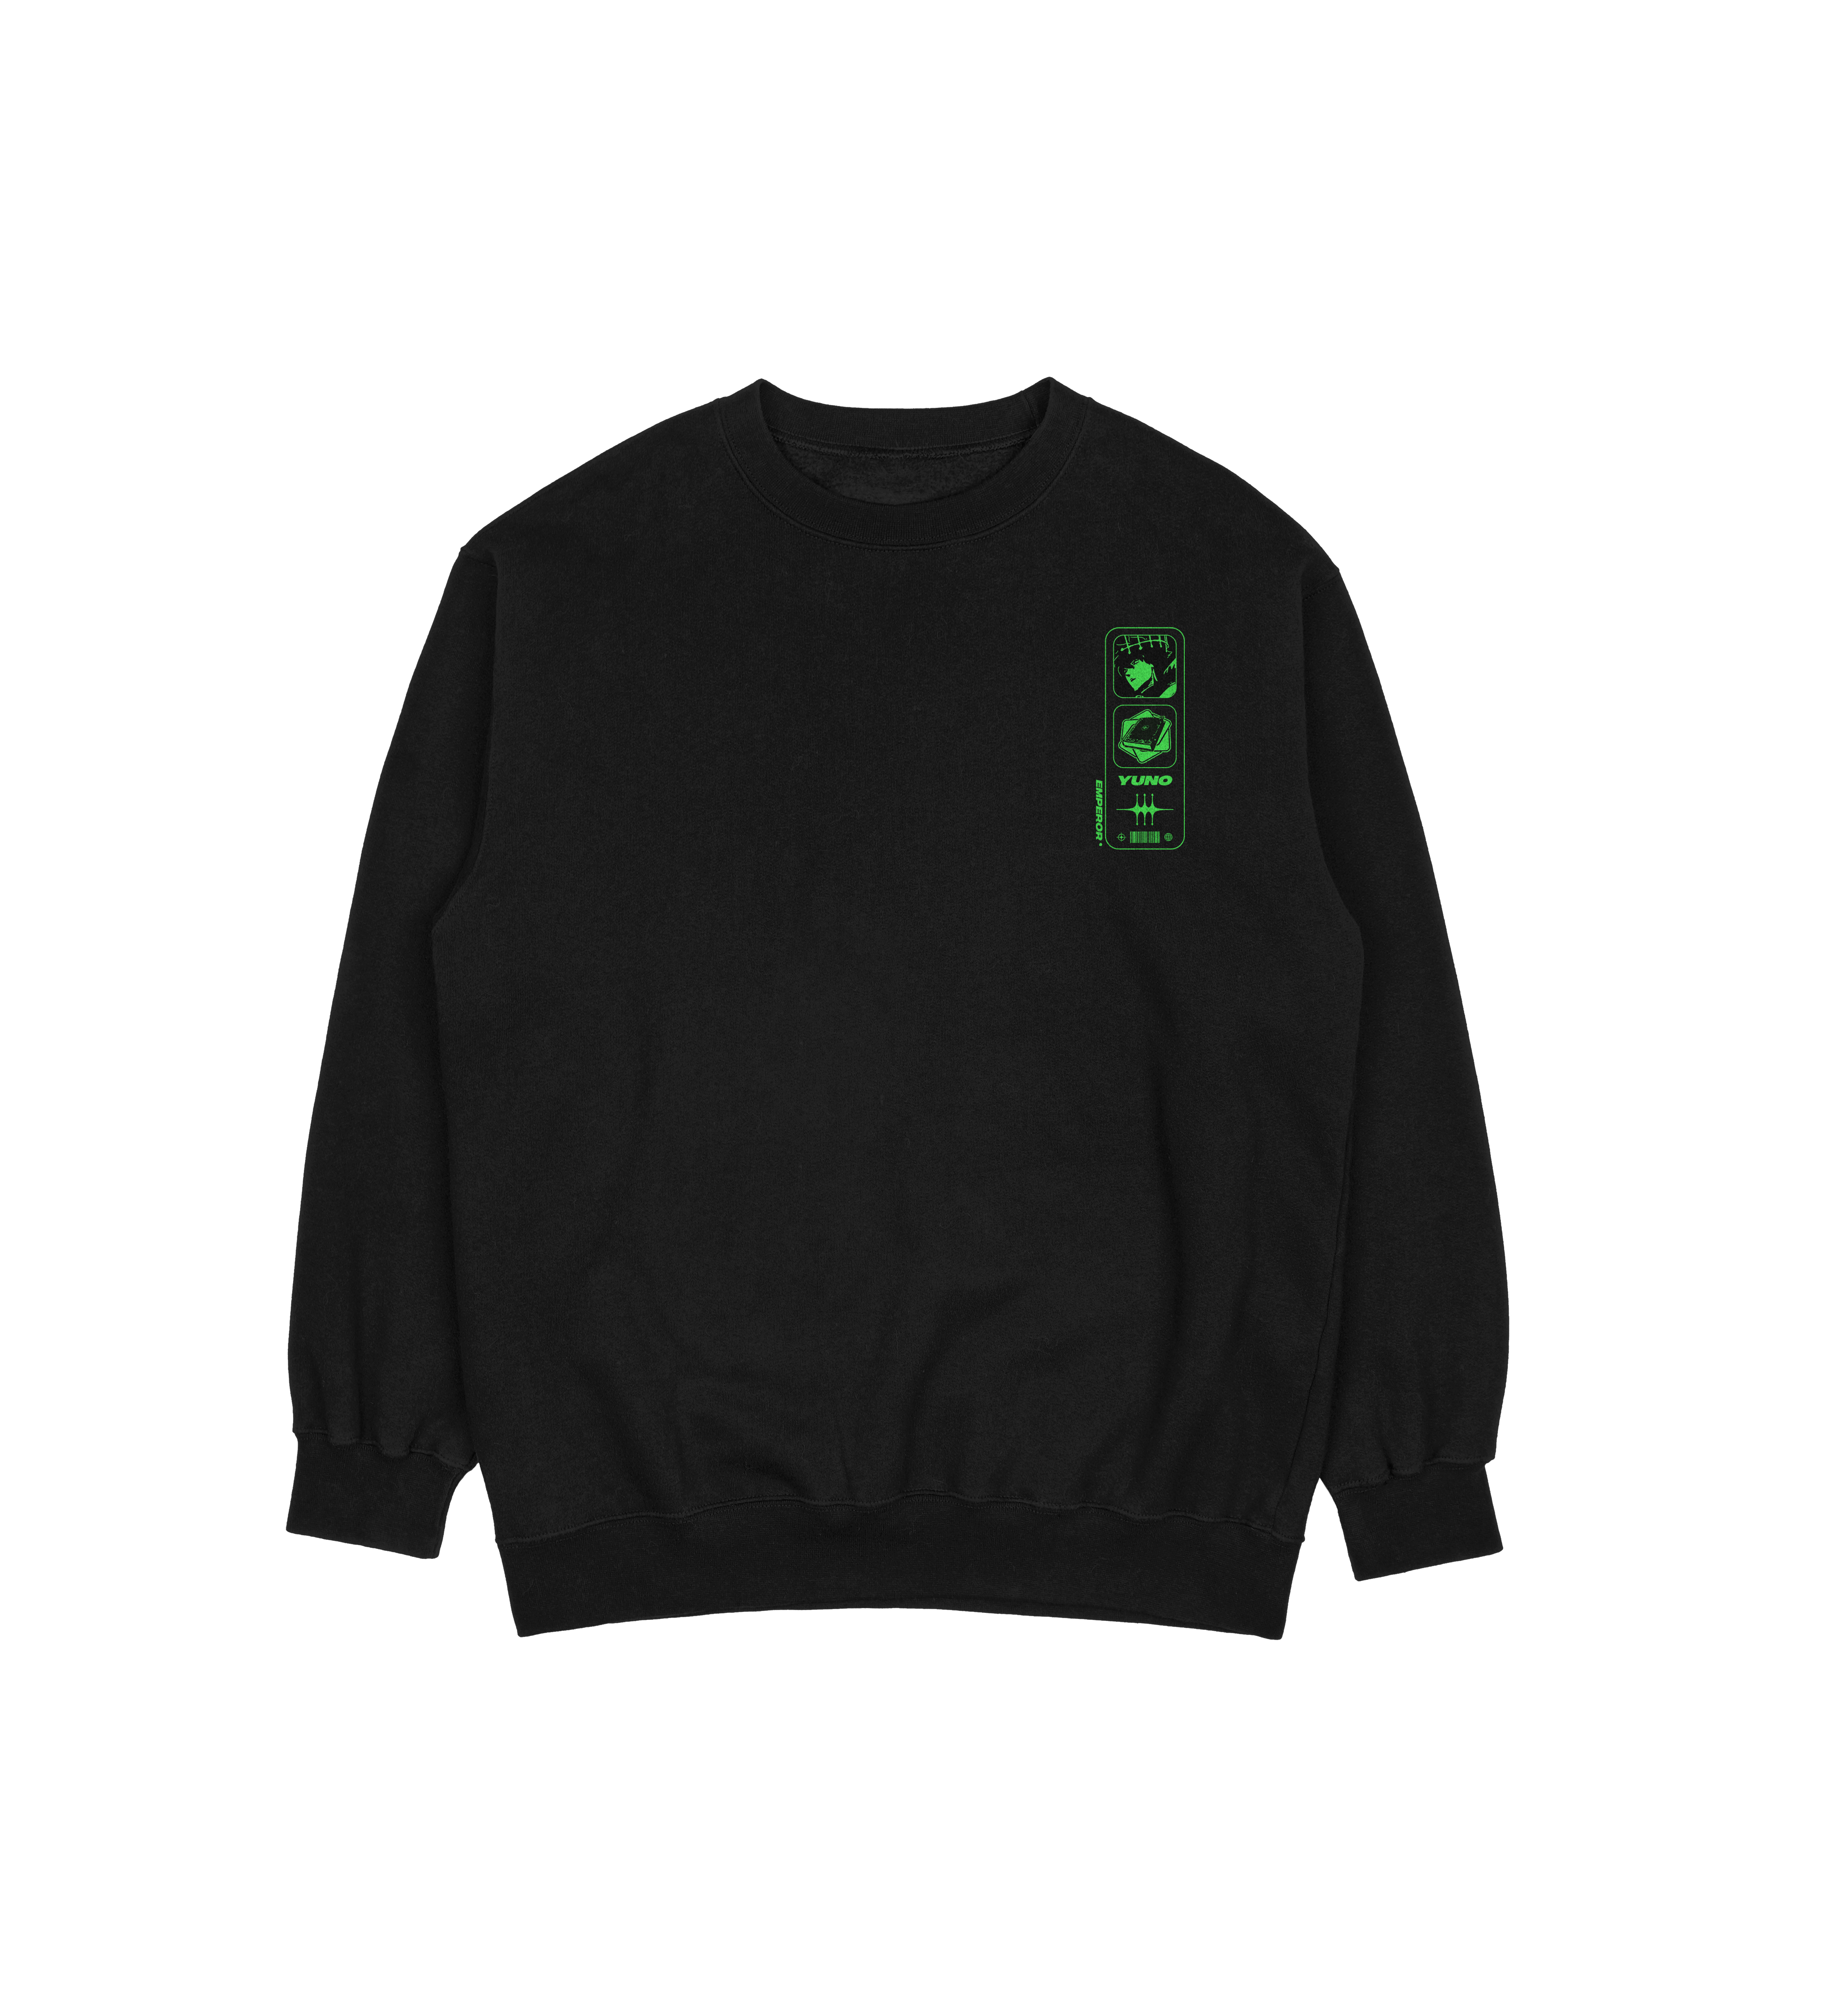 Yuno Black Clover | Sweatshirt